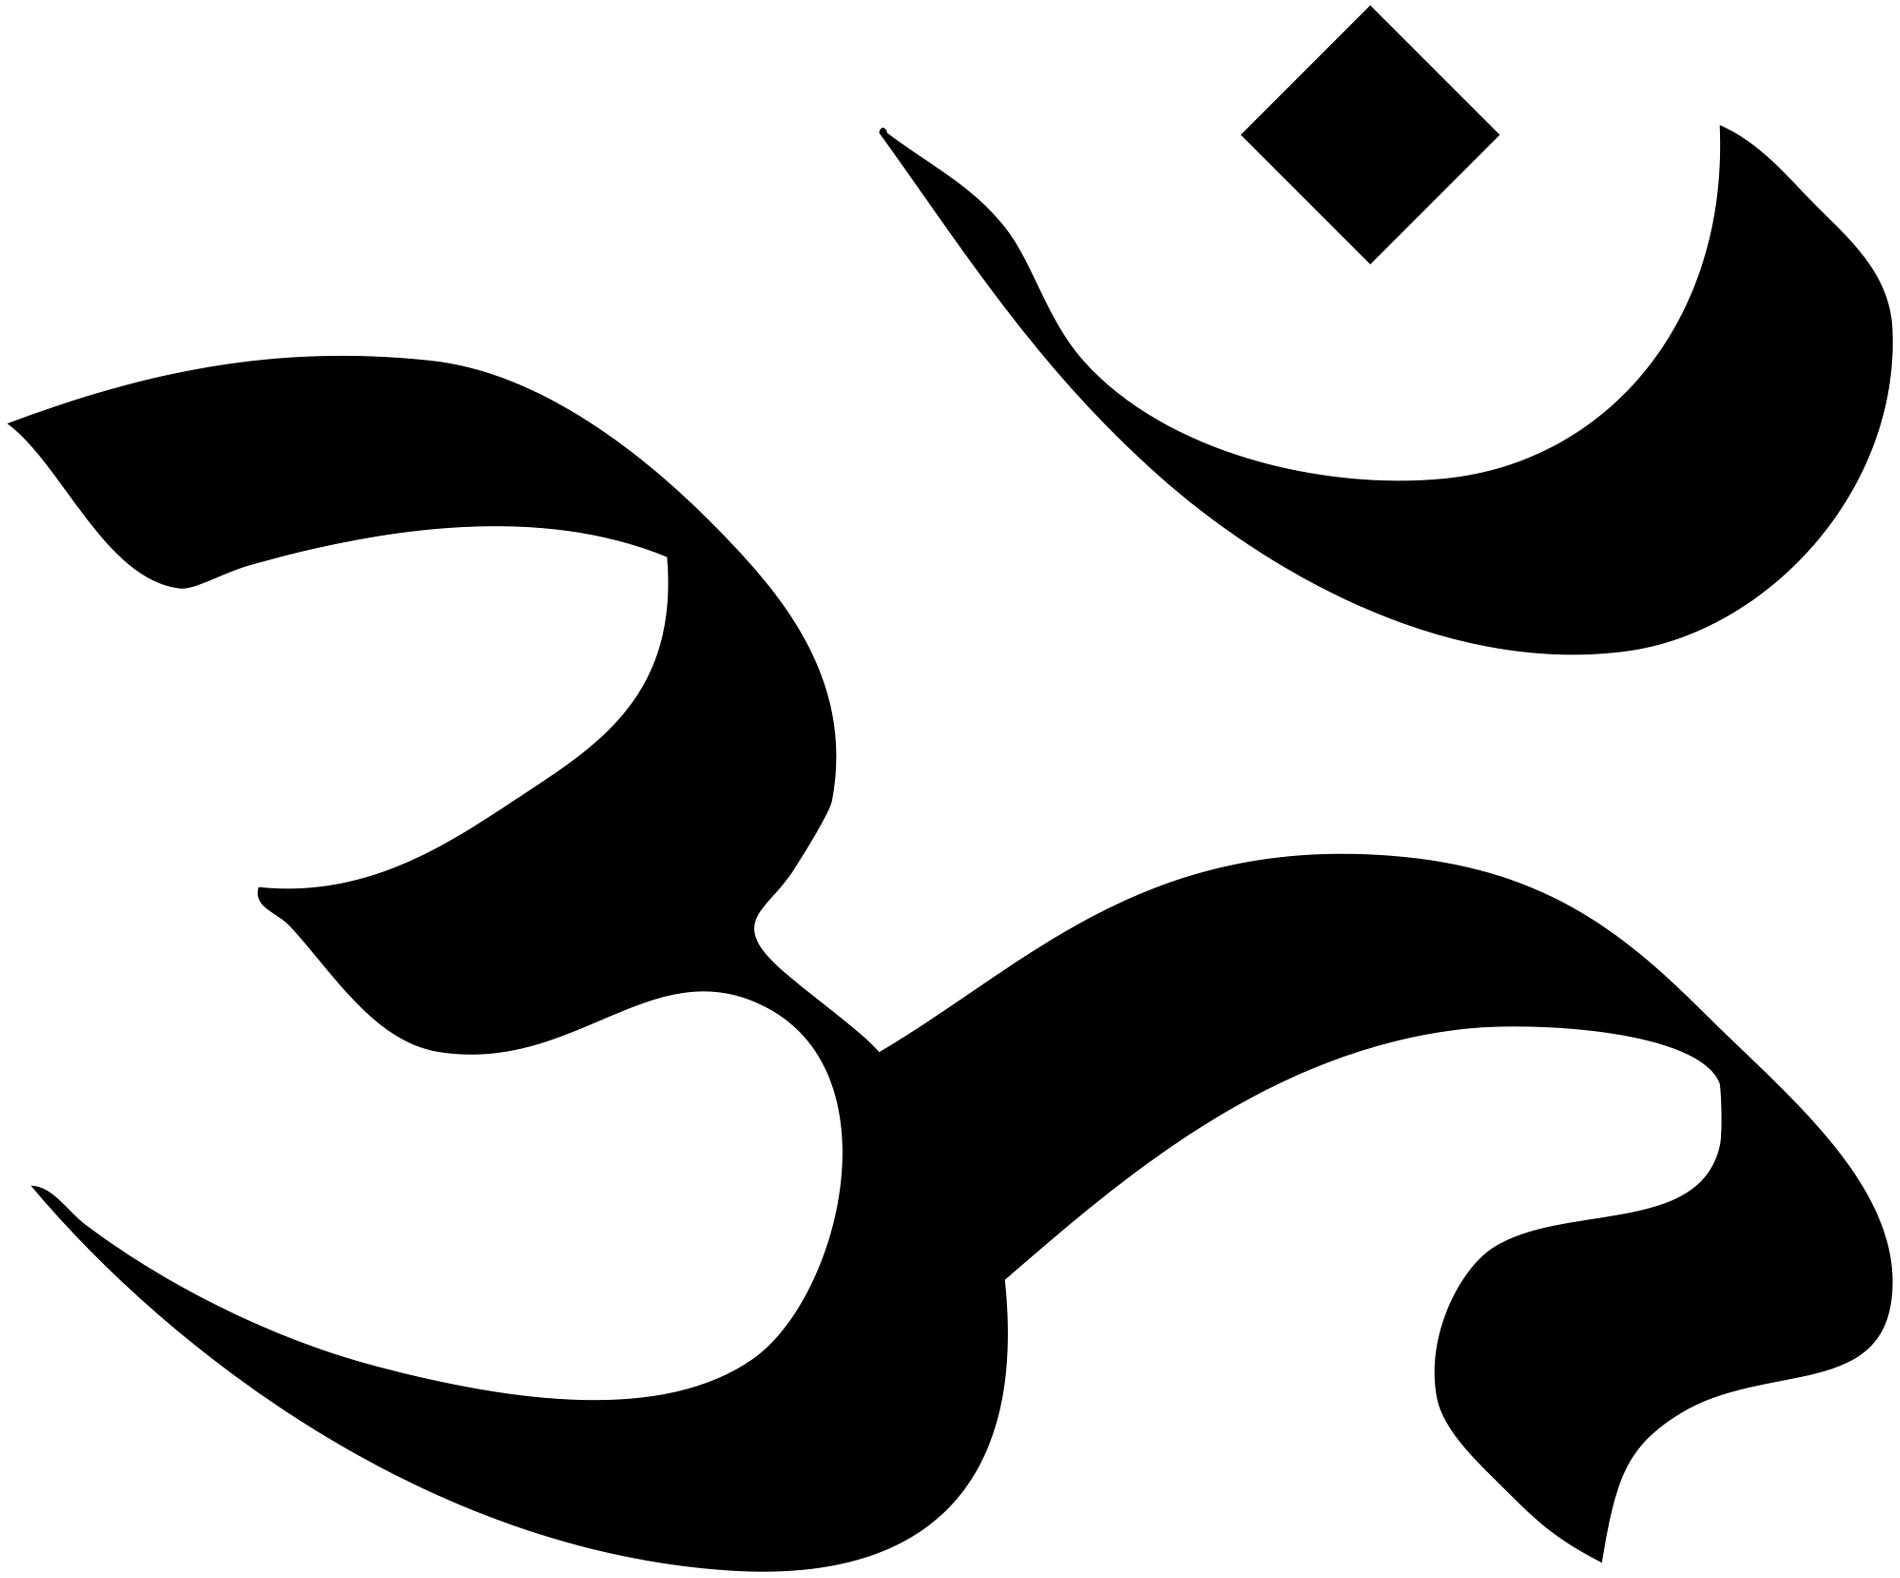 hindu symbols and their names